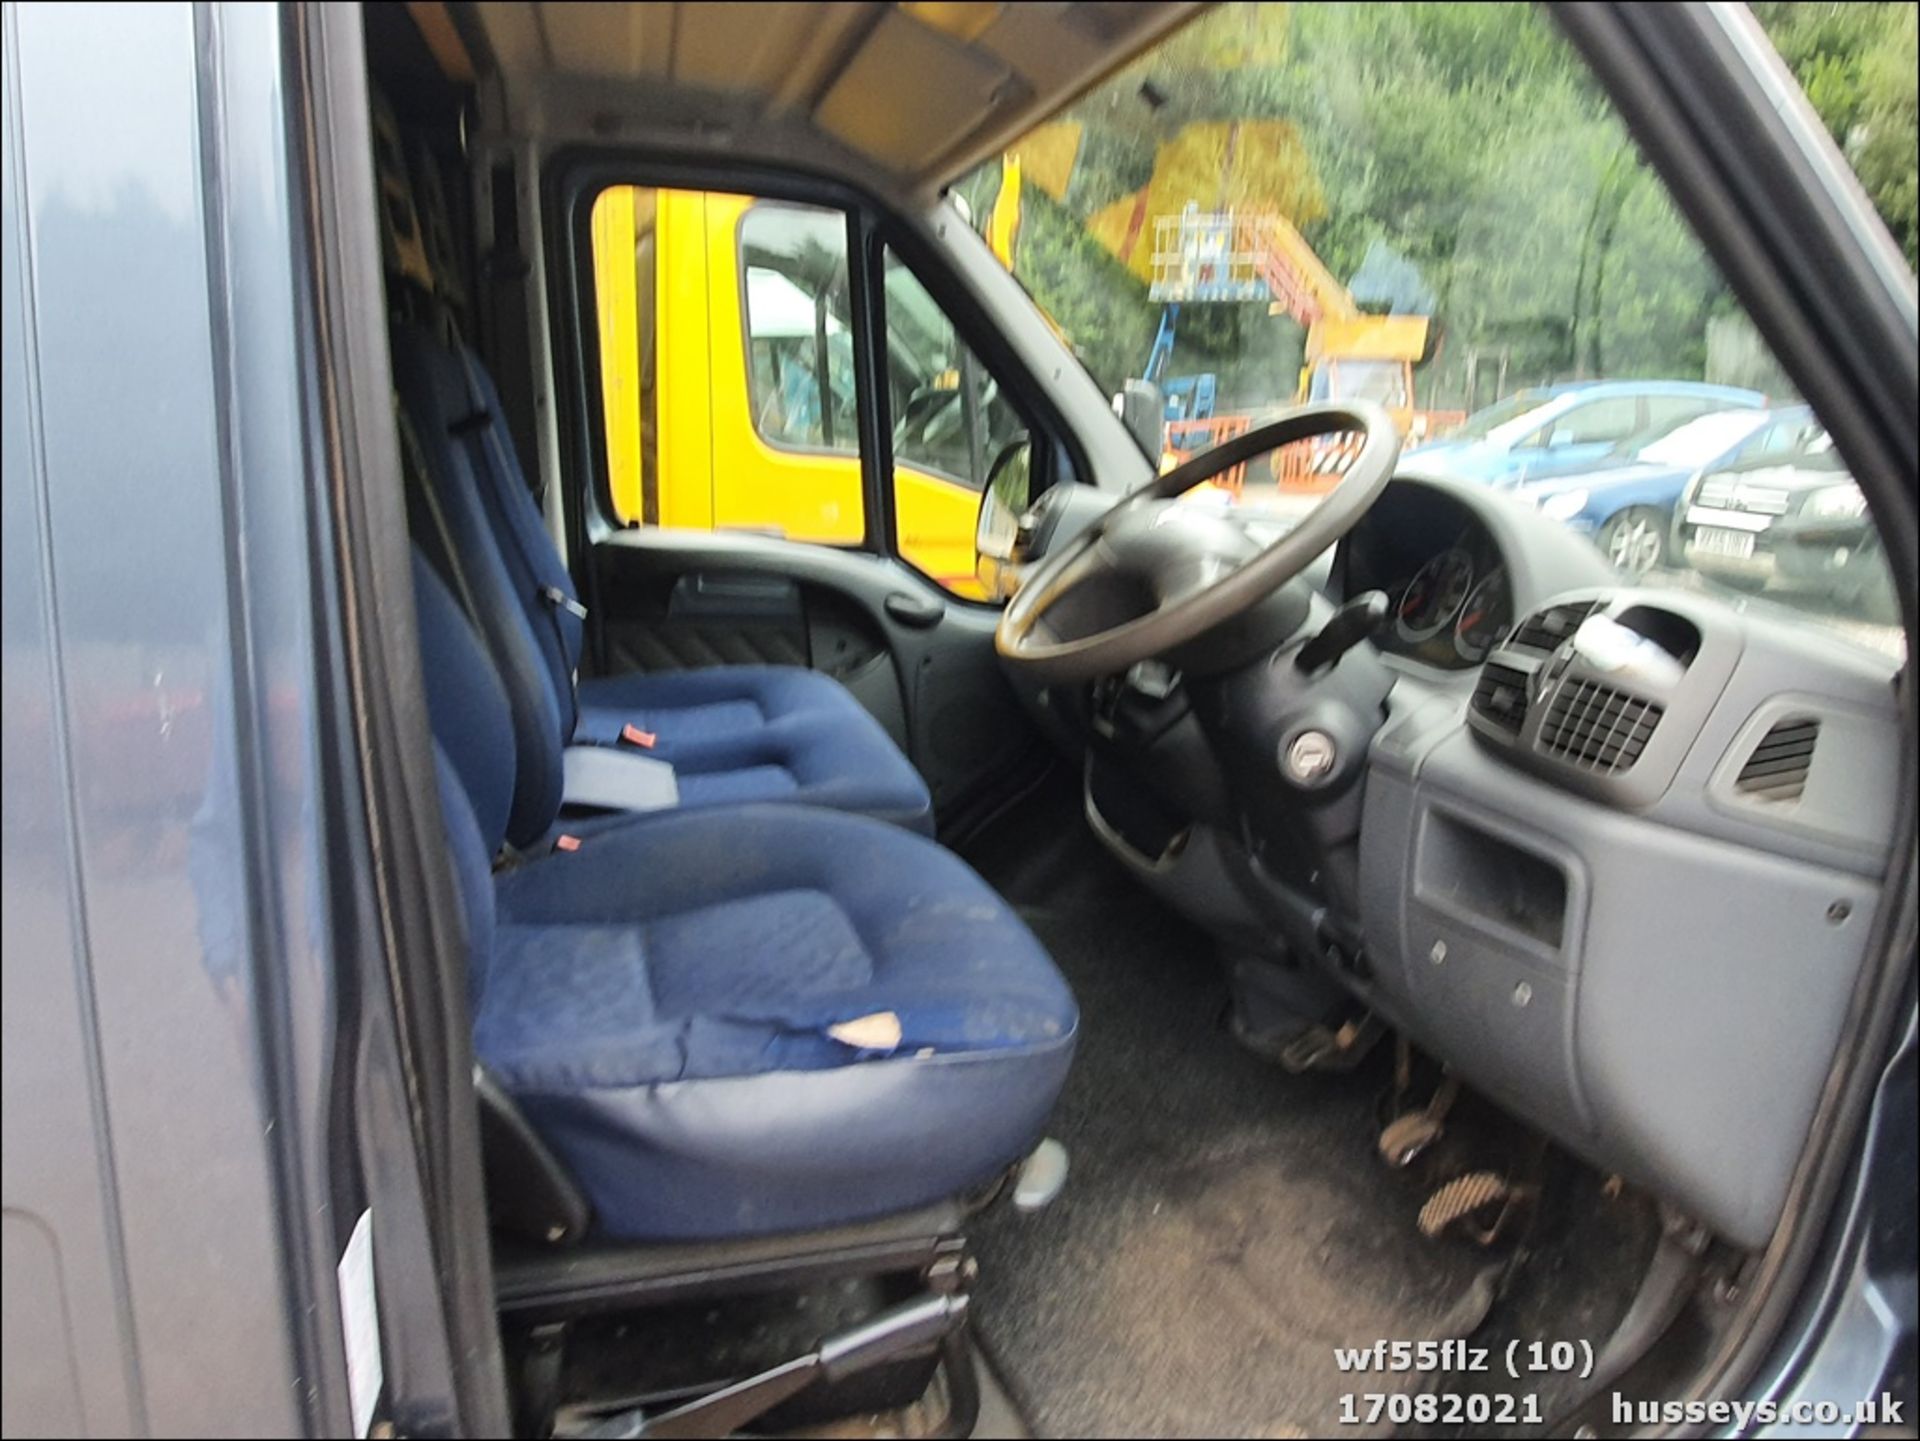 05/55 PEUGEOT BOXER 290 LX SWB HDI - 1997cc Van (Grey, 101k) - Image 10 of 12